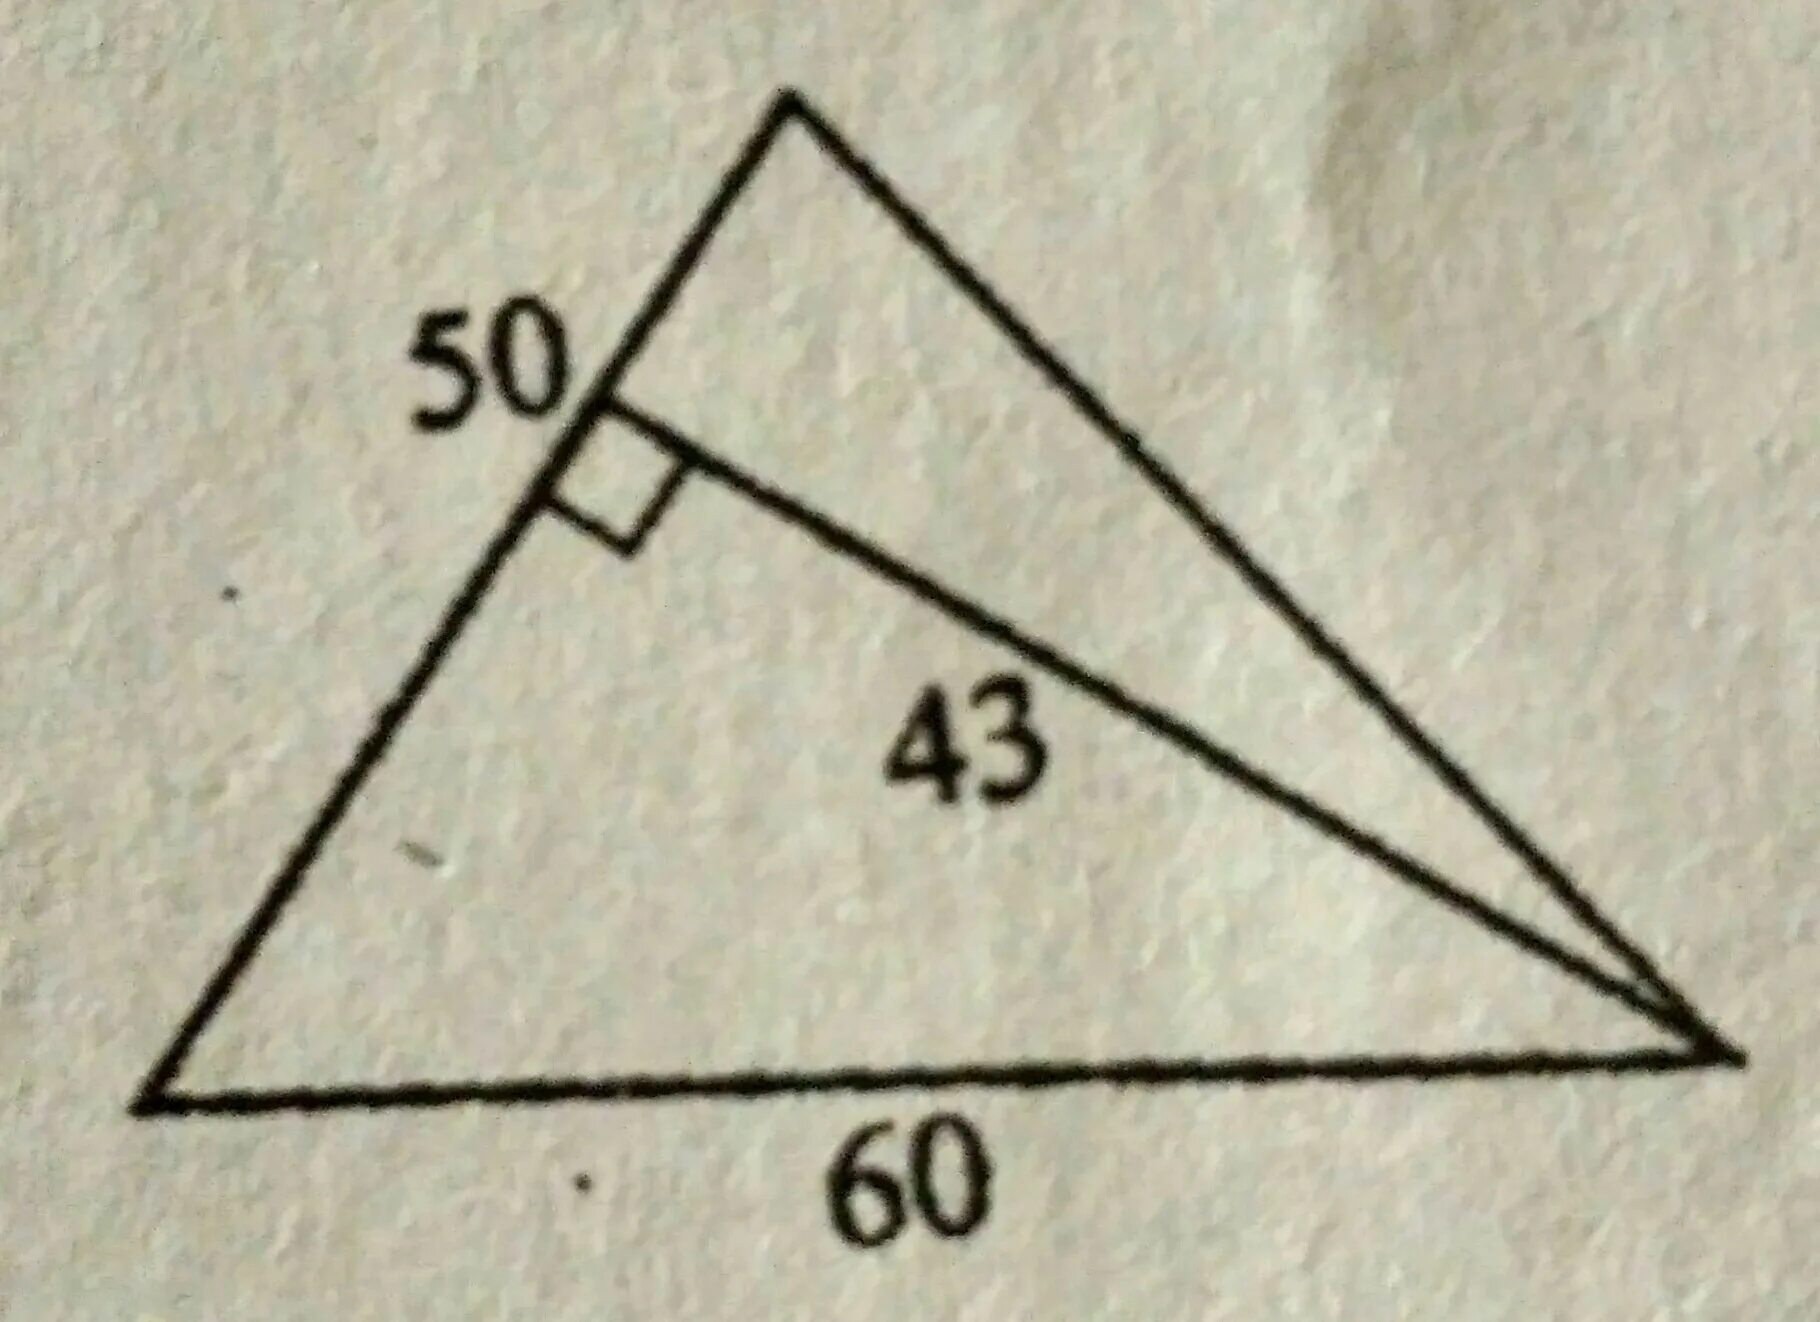 Что изображено на рисунке рис 60. Найдите площадь треугольника изображенного на рисунке. Площадь треугольника изображенного на рисунке. Найдите площадь треугольника изображенного на рисунке 50 43 60. Треугольники изображенные на рисунке.